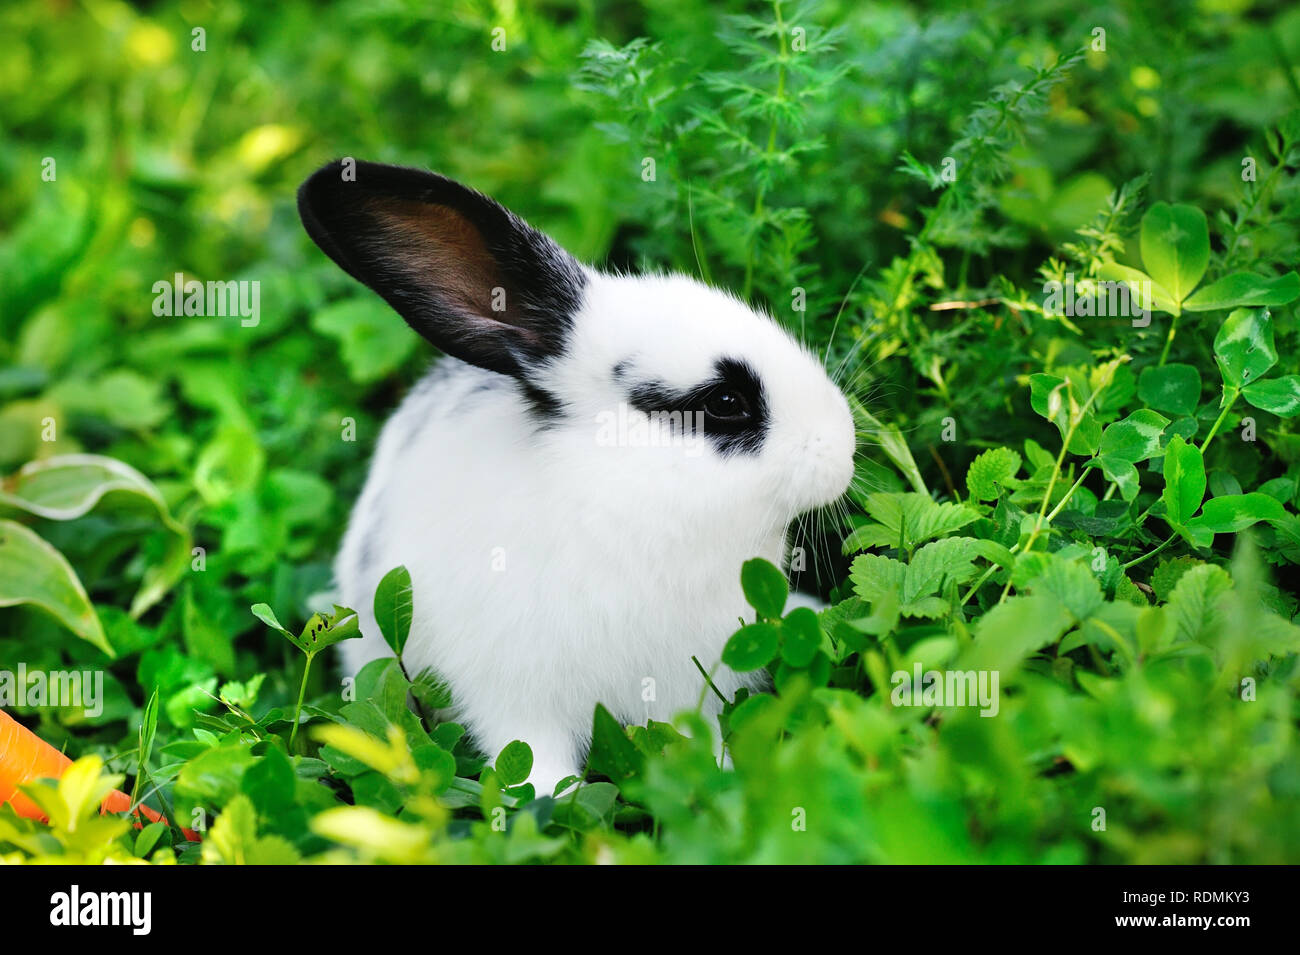 baby white hare